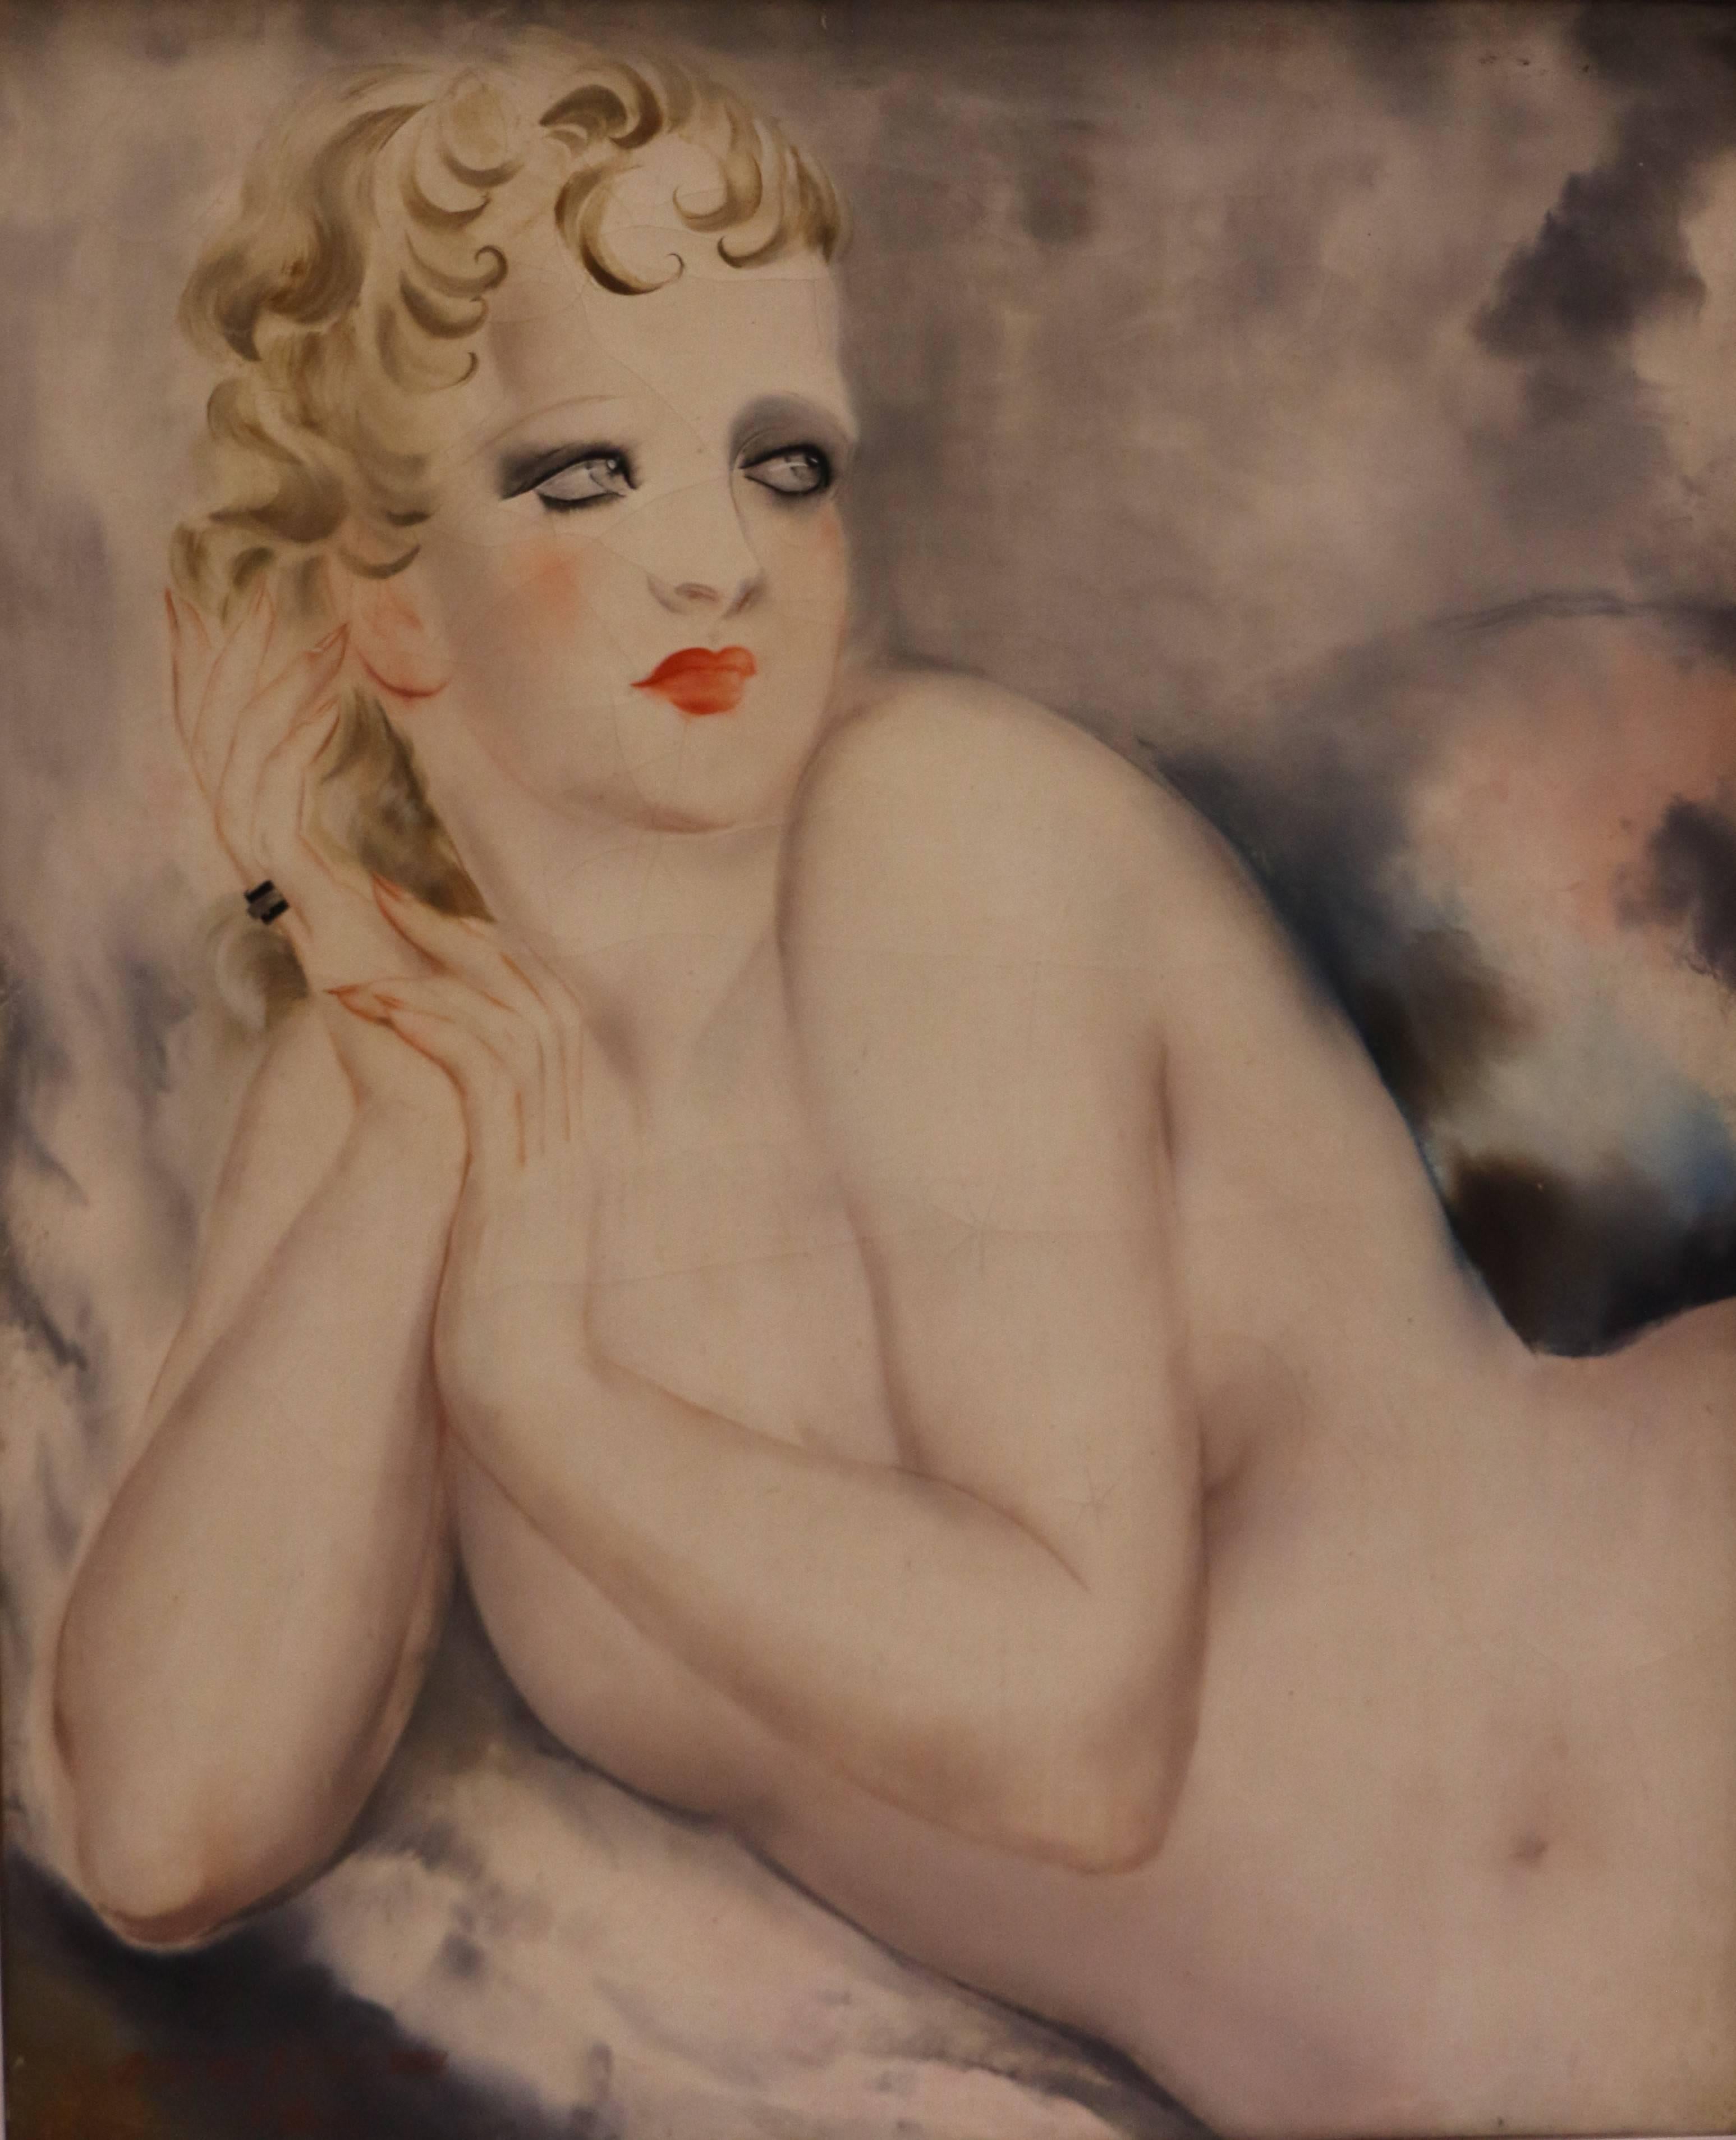 Magnifique nu féminin allongé de Mikao Kono (1900-1979).
Huile sur papier collé sur toile.
Signé et daté XXXIII (33) en rouge en bas à gauche.
Dimension : 46 x 38cm (sans cadre), 52 x 44cm (avec cadre)

Miçao Kono était un artiste japonais qui